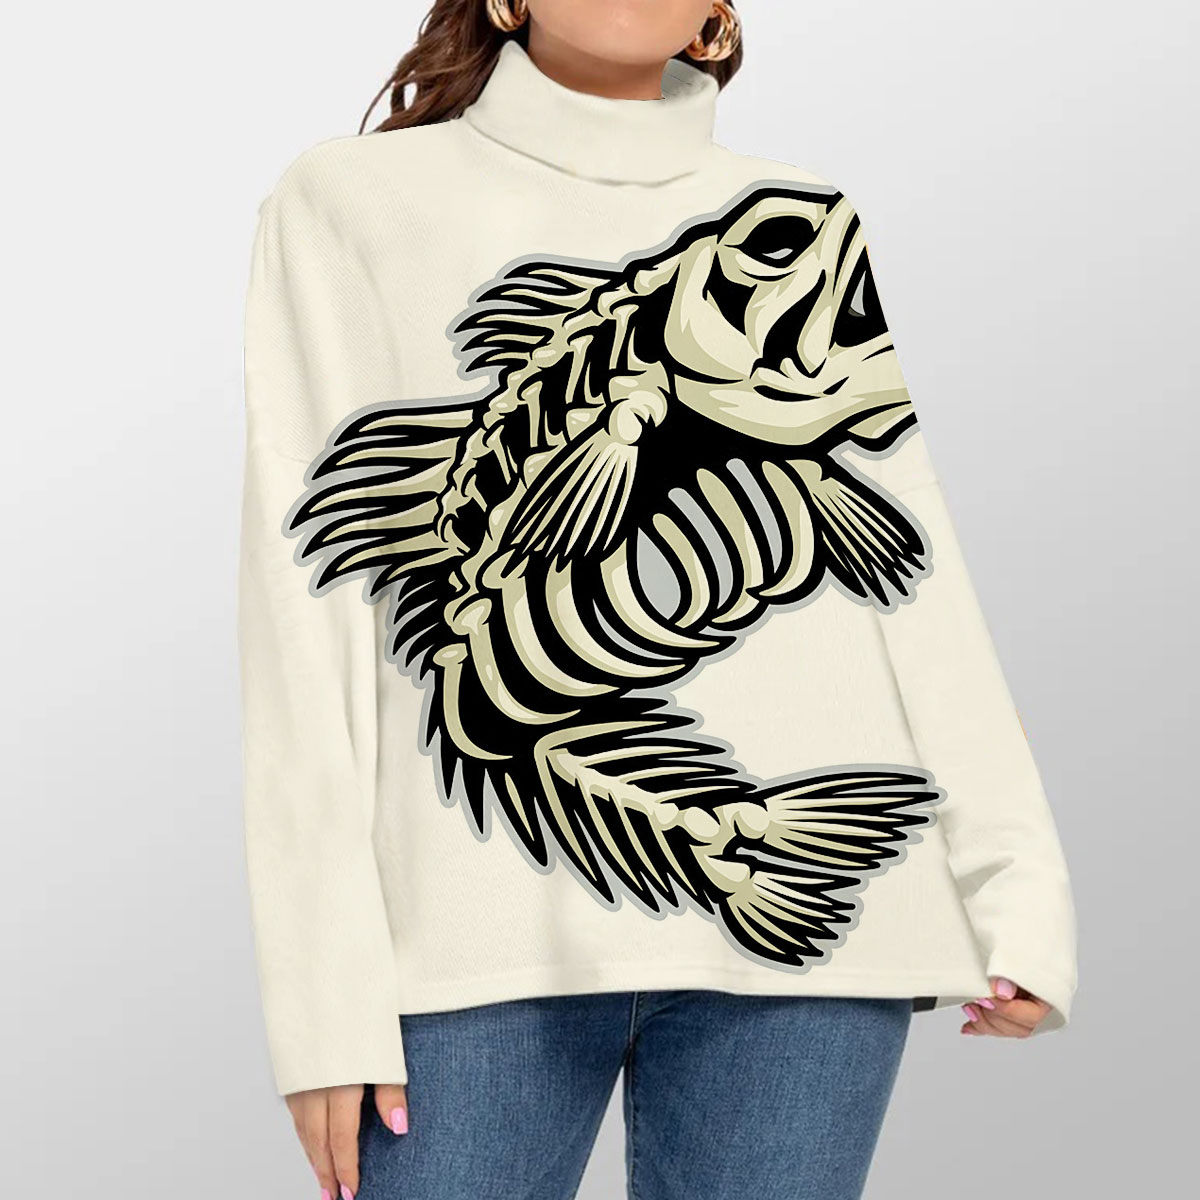 Skeleton Bass Fish Turtleneck Sweater